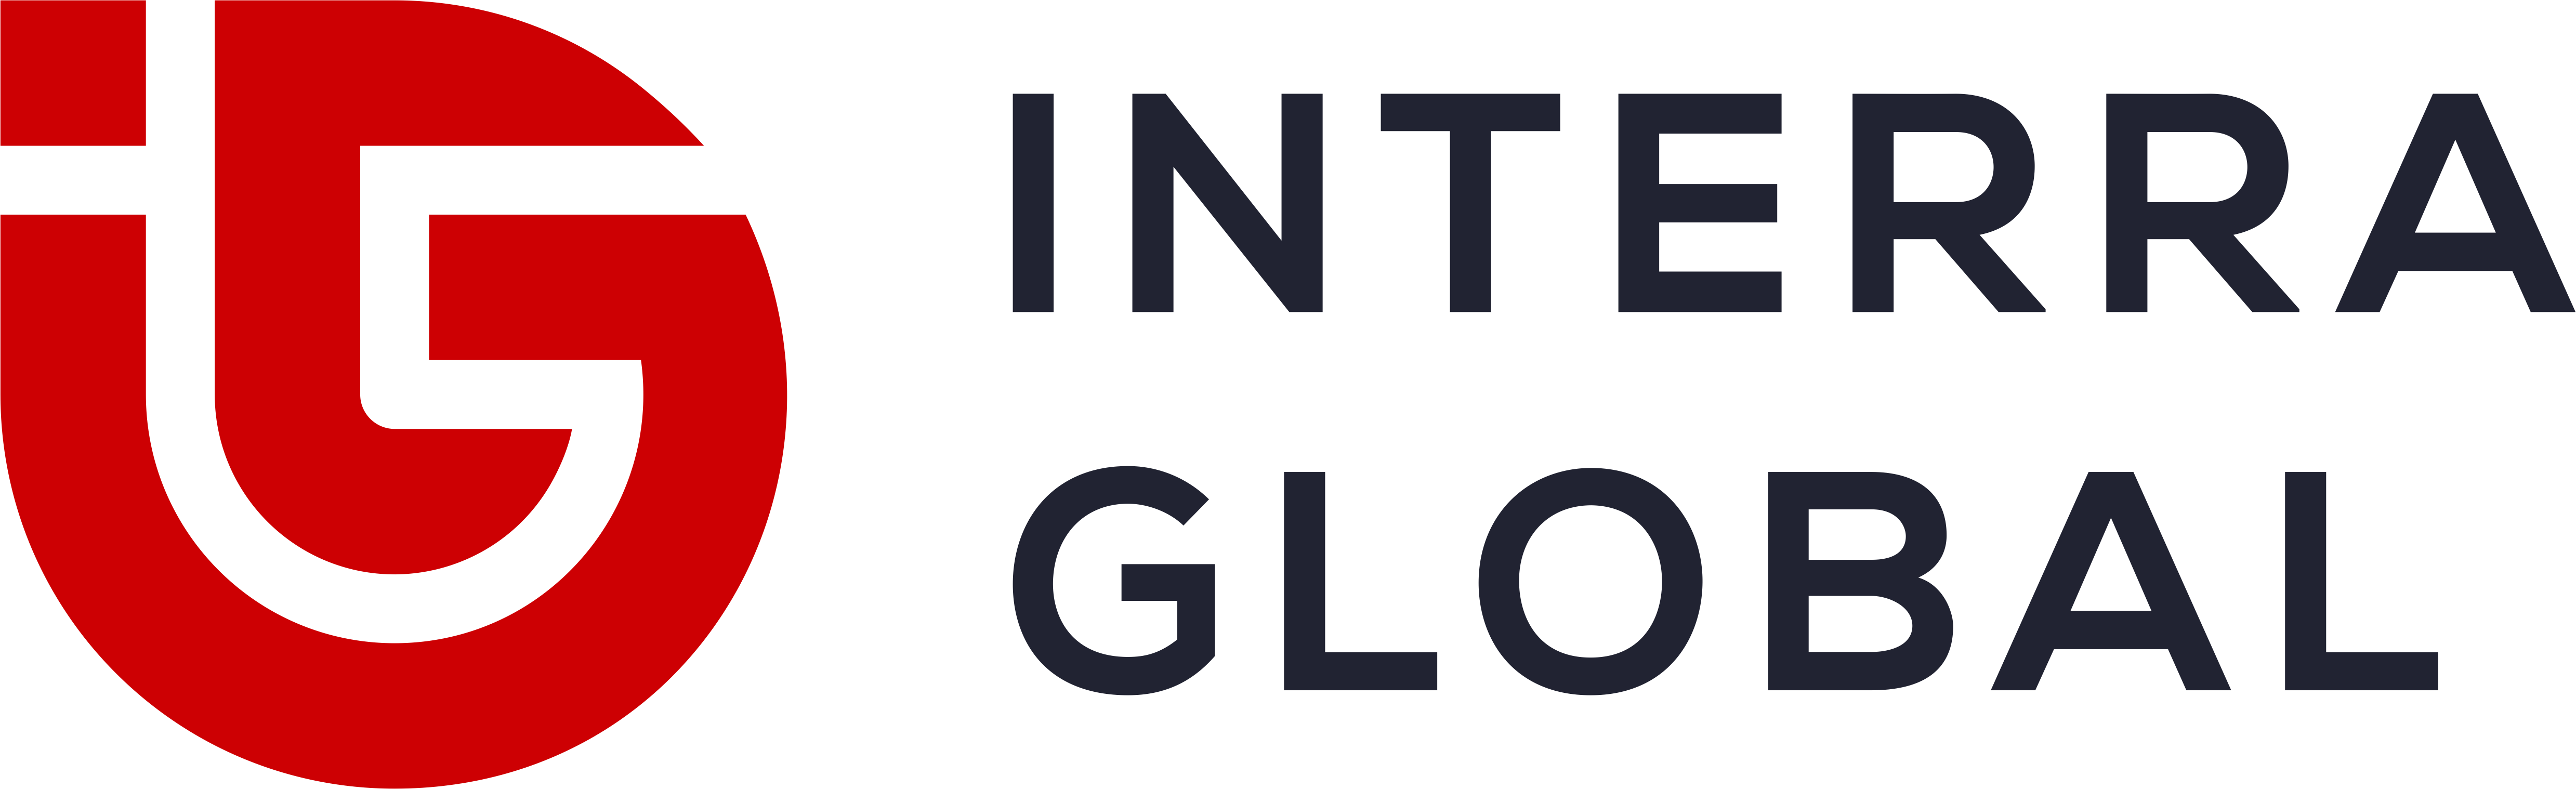 Interra Global